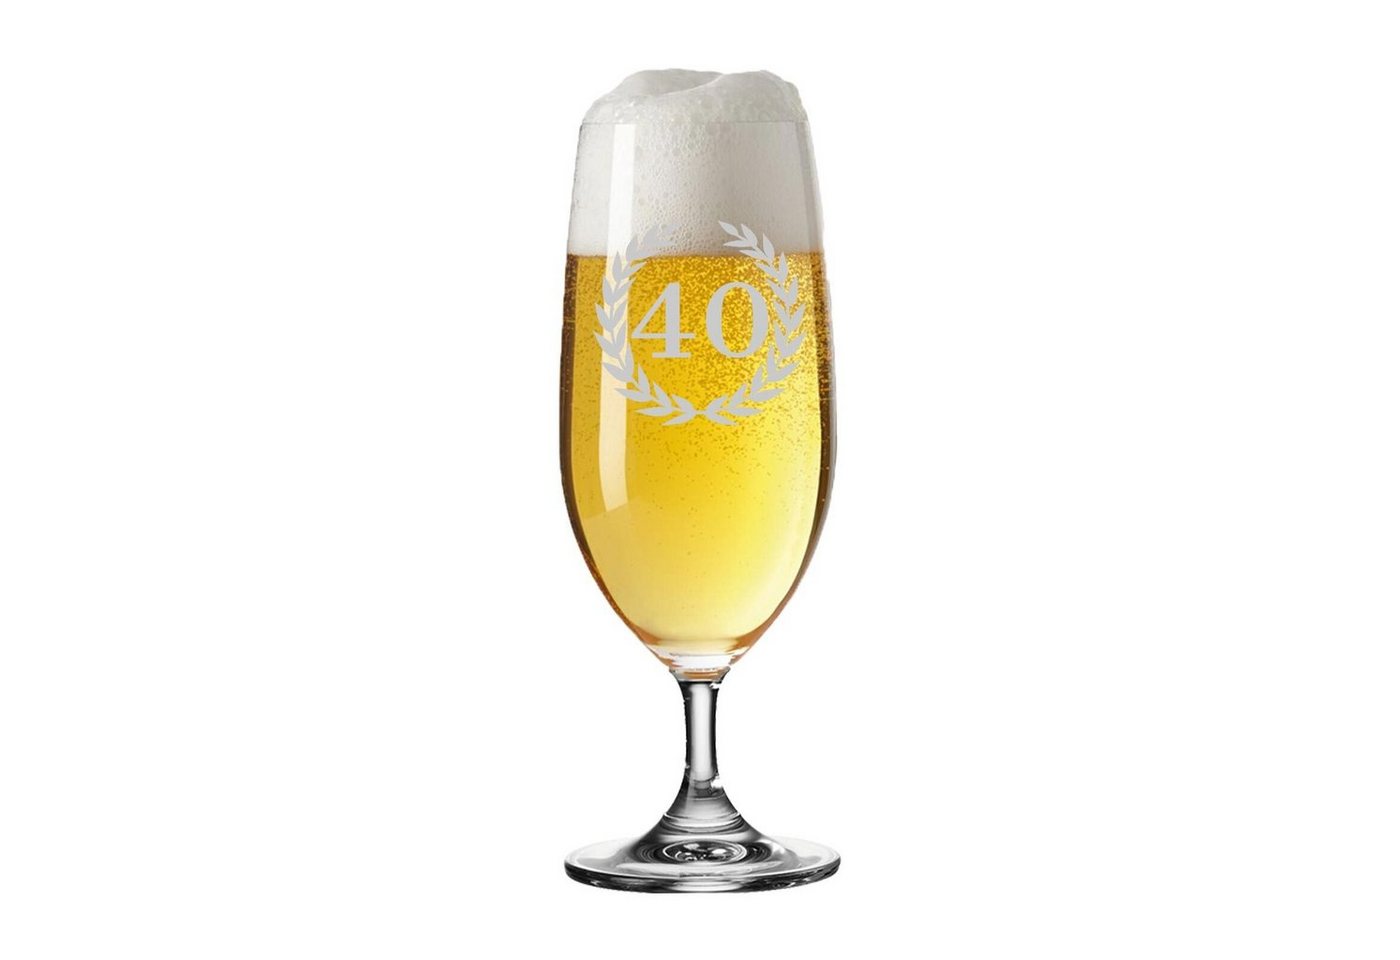 LUXENTU Bierglas 40. Jubiläum Biertulpe Pilsglas mit Gravur 360 ml, Glas von LUXENTU